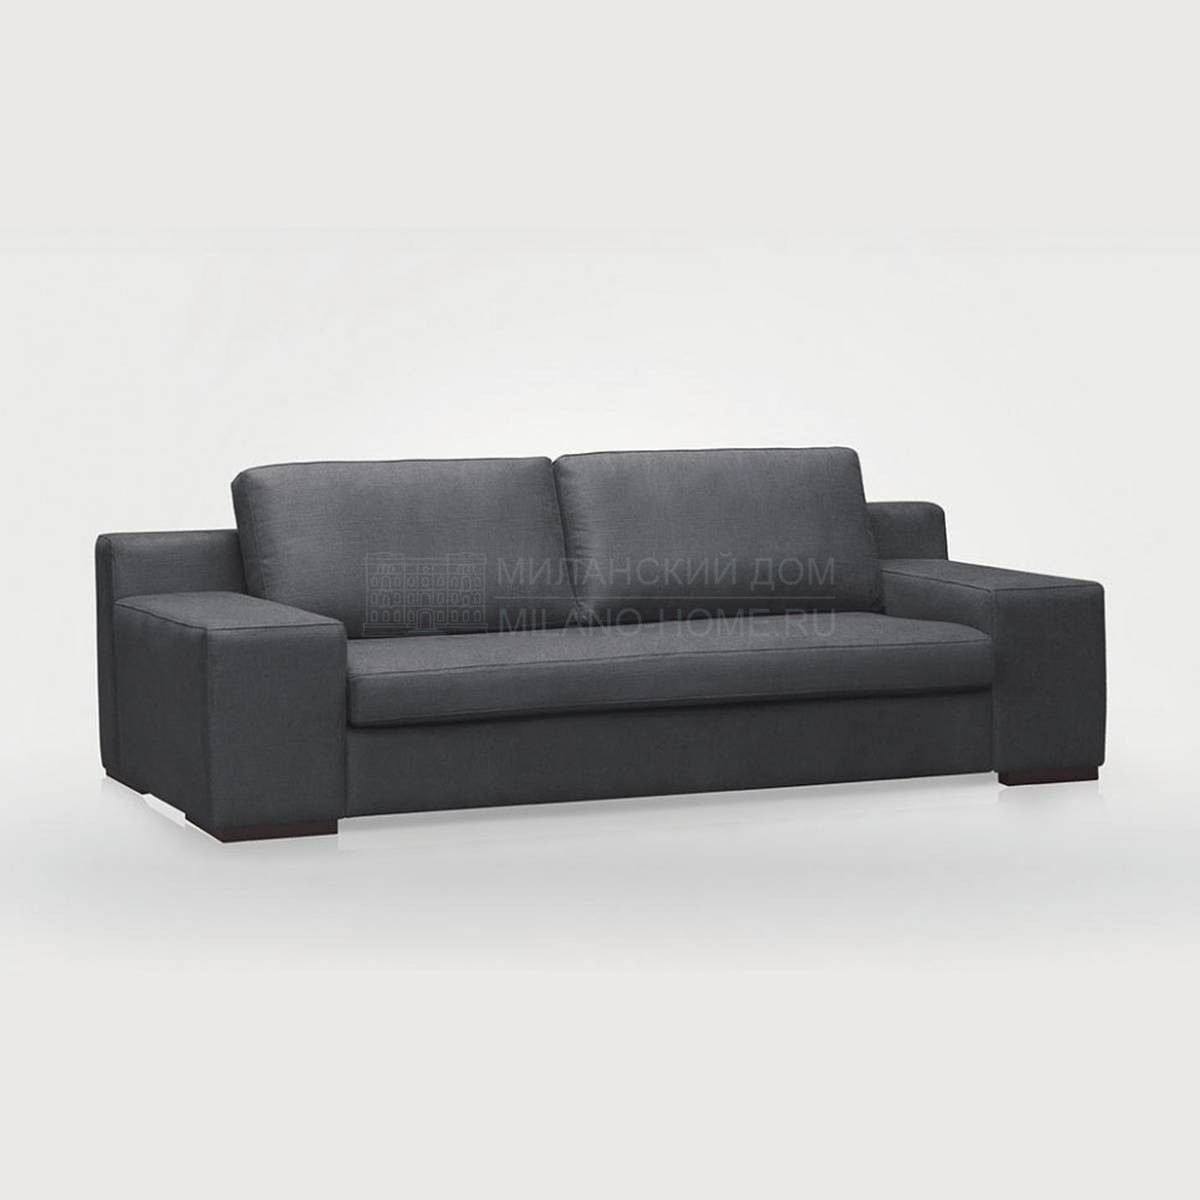 Прямой диван Zen Plus/sofa из Испании фабрики MANUEL LARRAGA